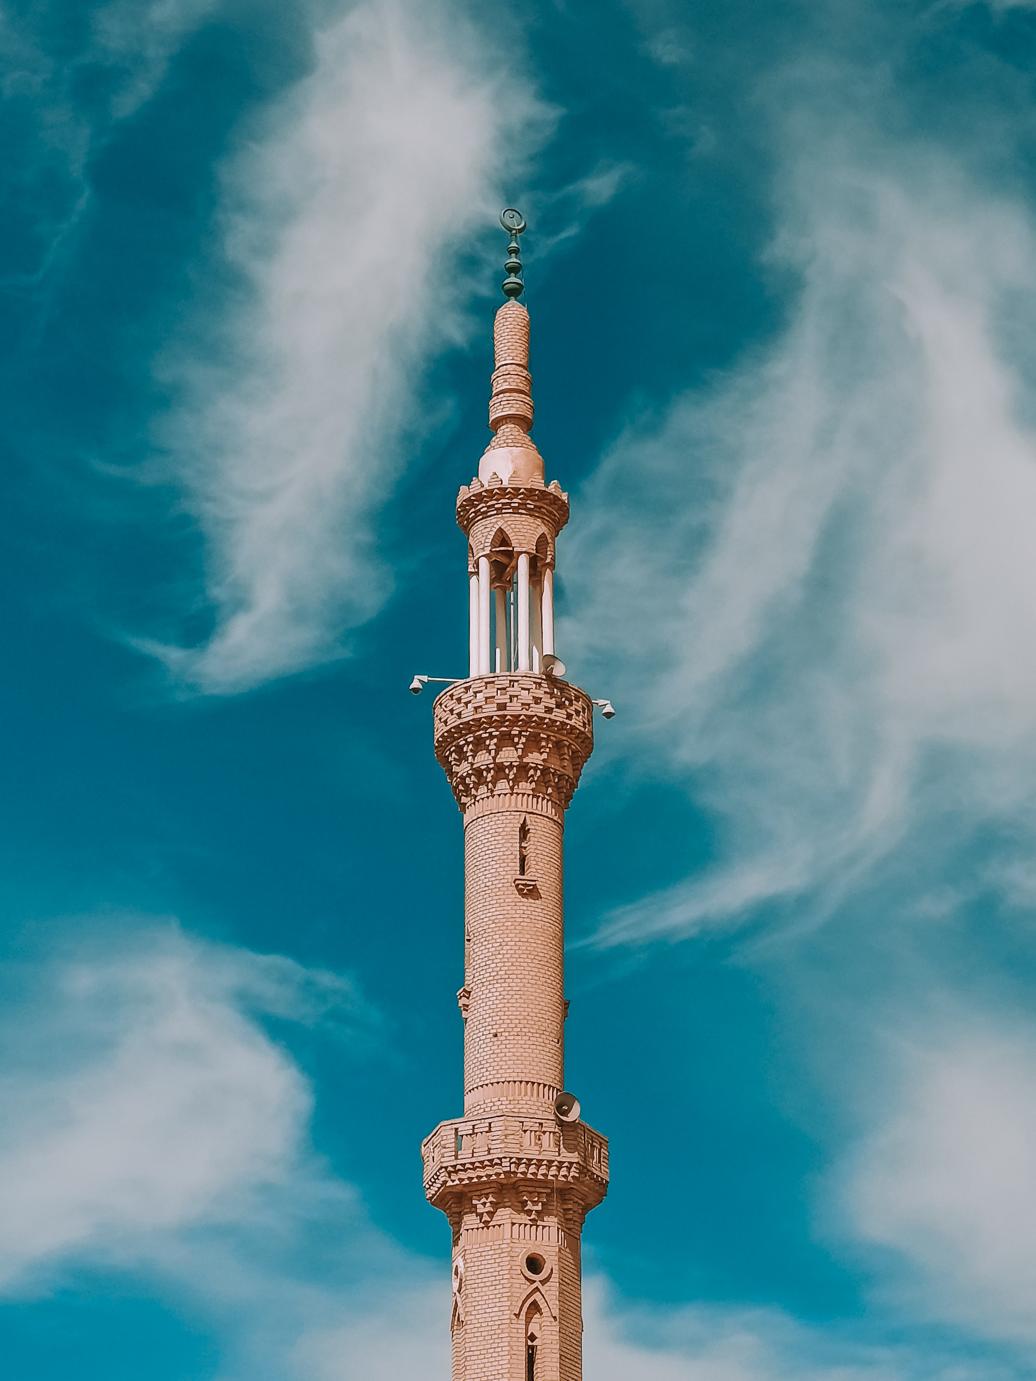 Architektura islamska: charakterystyka i najważniejsze budowle